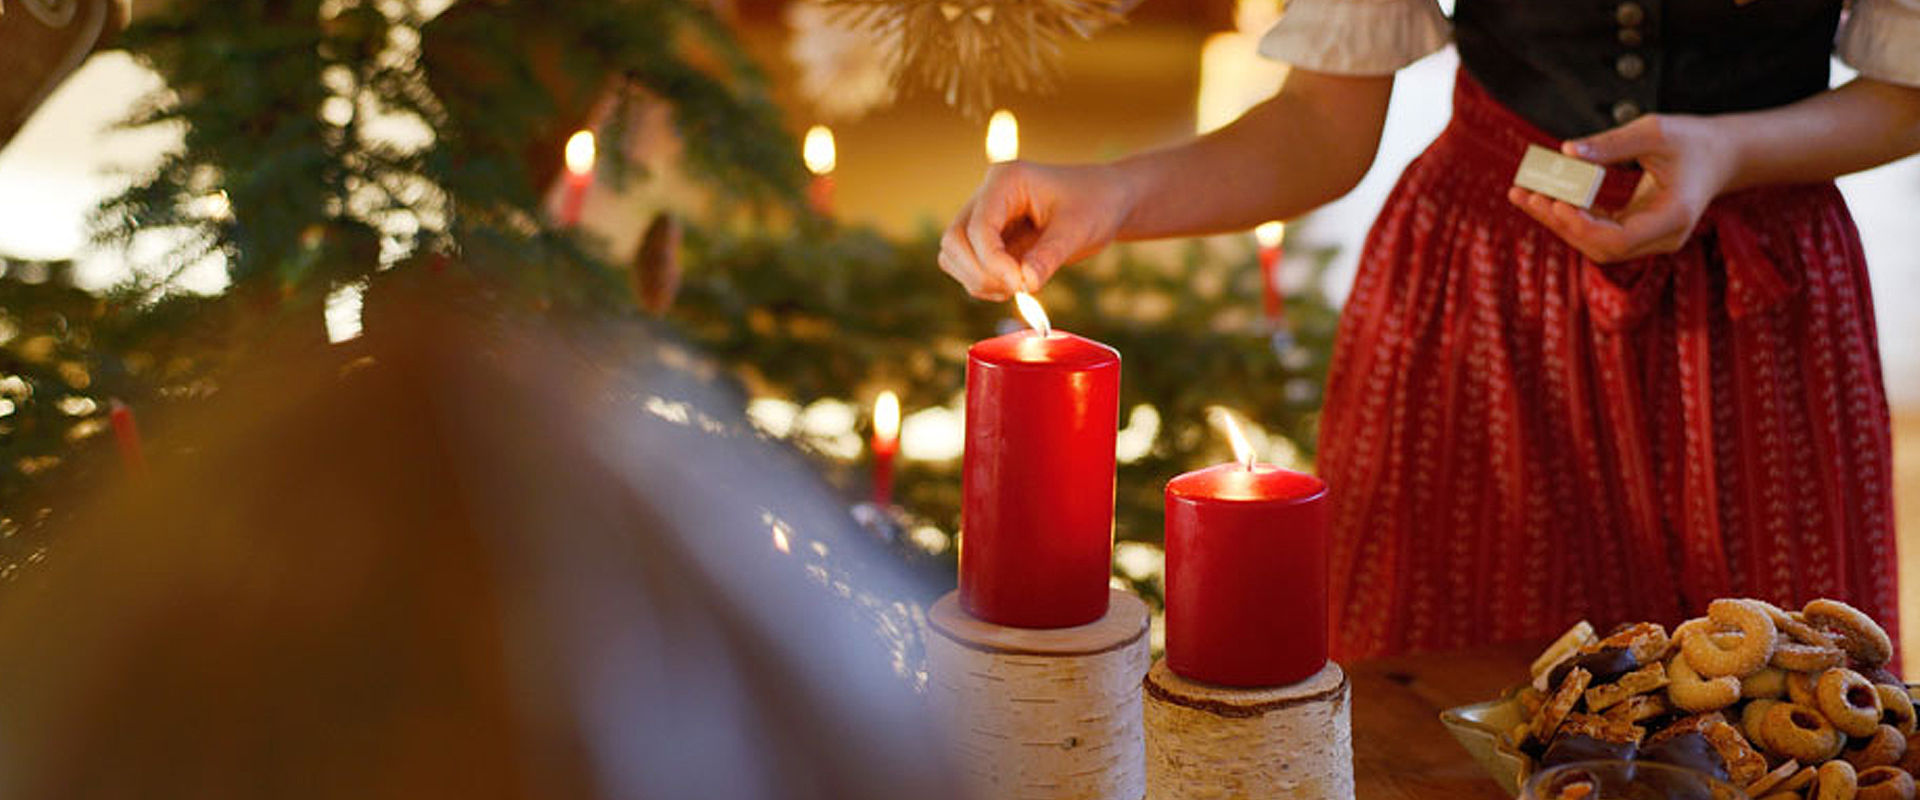 Frau im Dirndl zündet rote Kerze an und daneben sind Weihnachtskekse